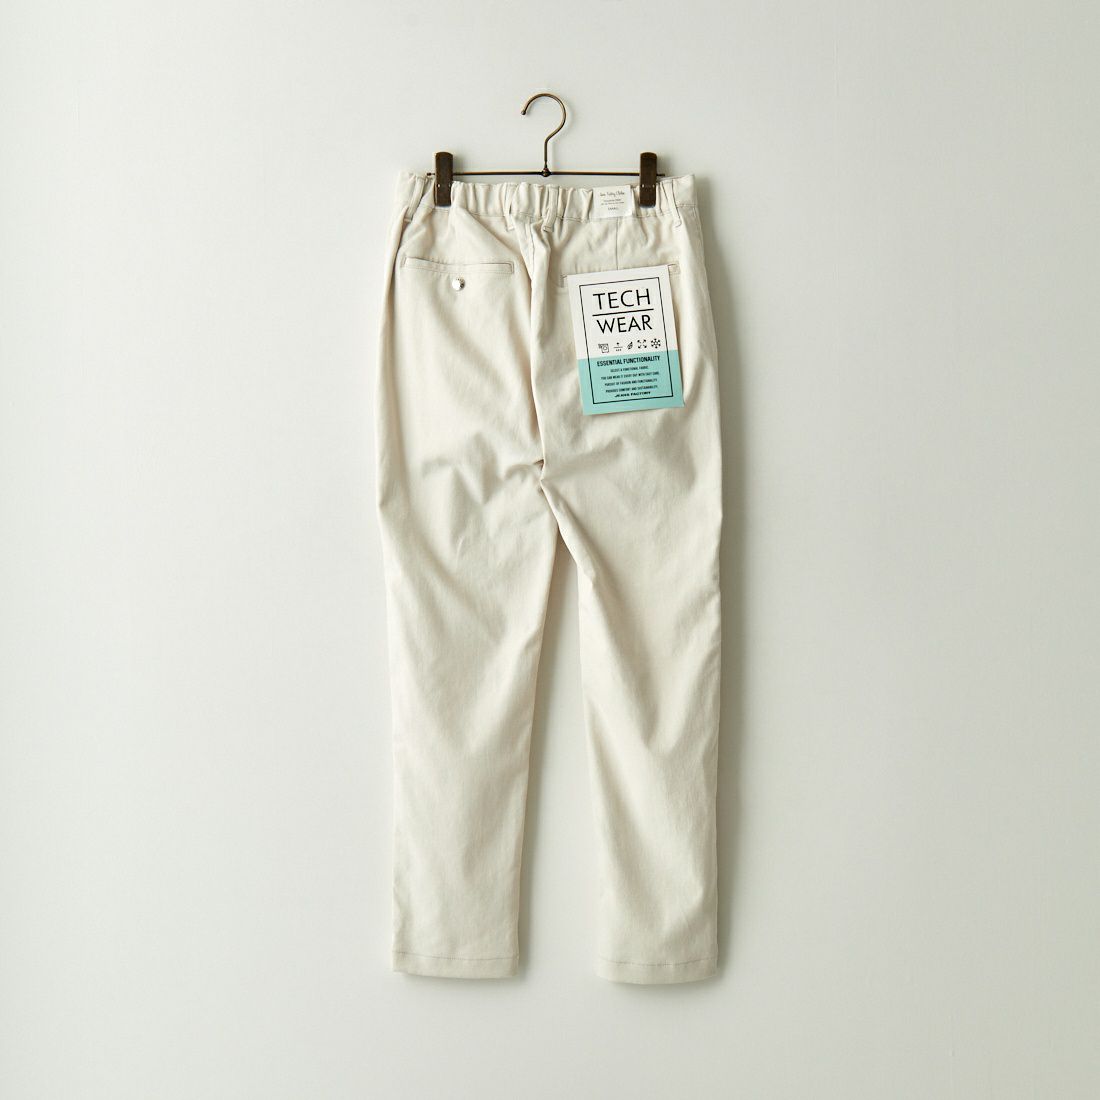 Jeans Factory Clothes [ジーンズファクトリークローズ] シェリタリングドライオックス1Pイージートラウザー [JFC-231-025] 68 OFF